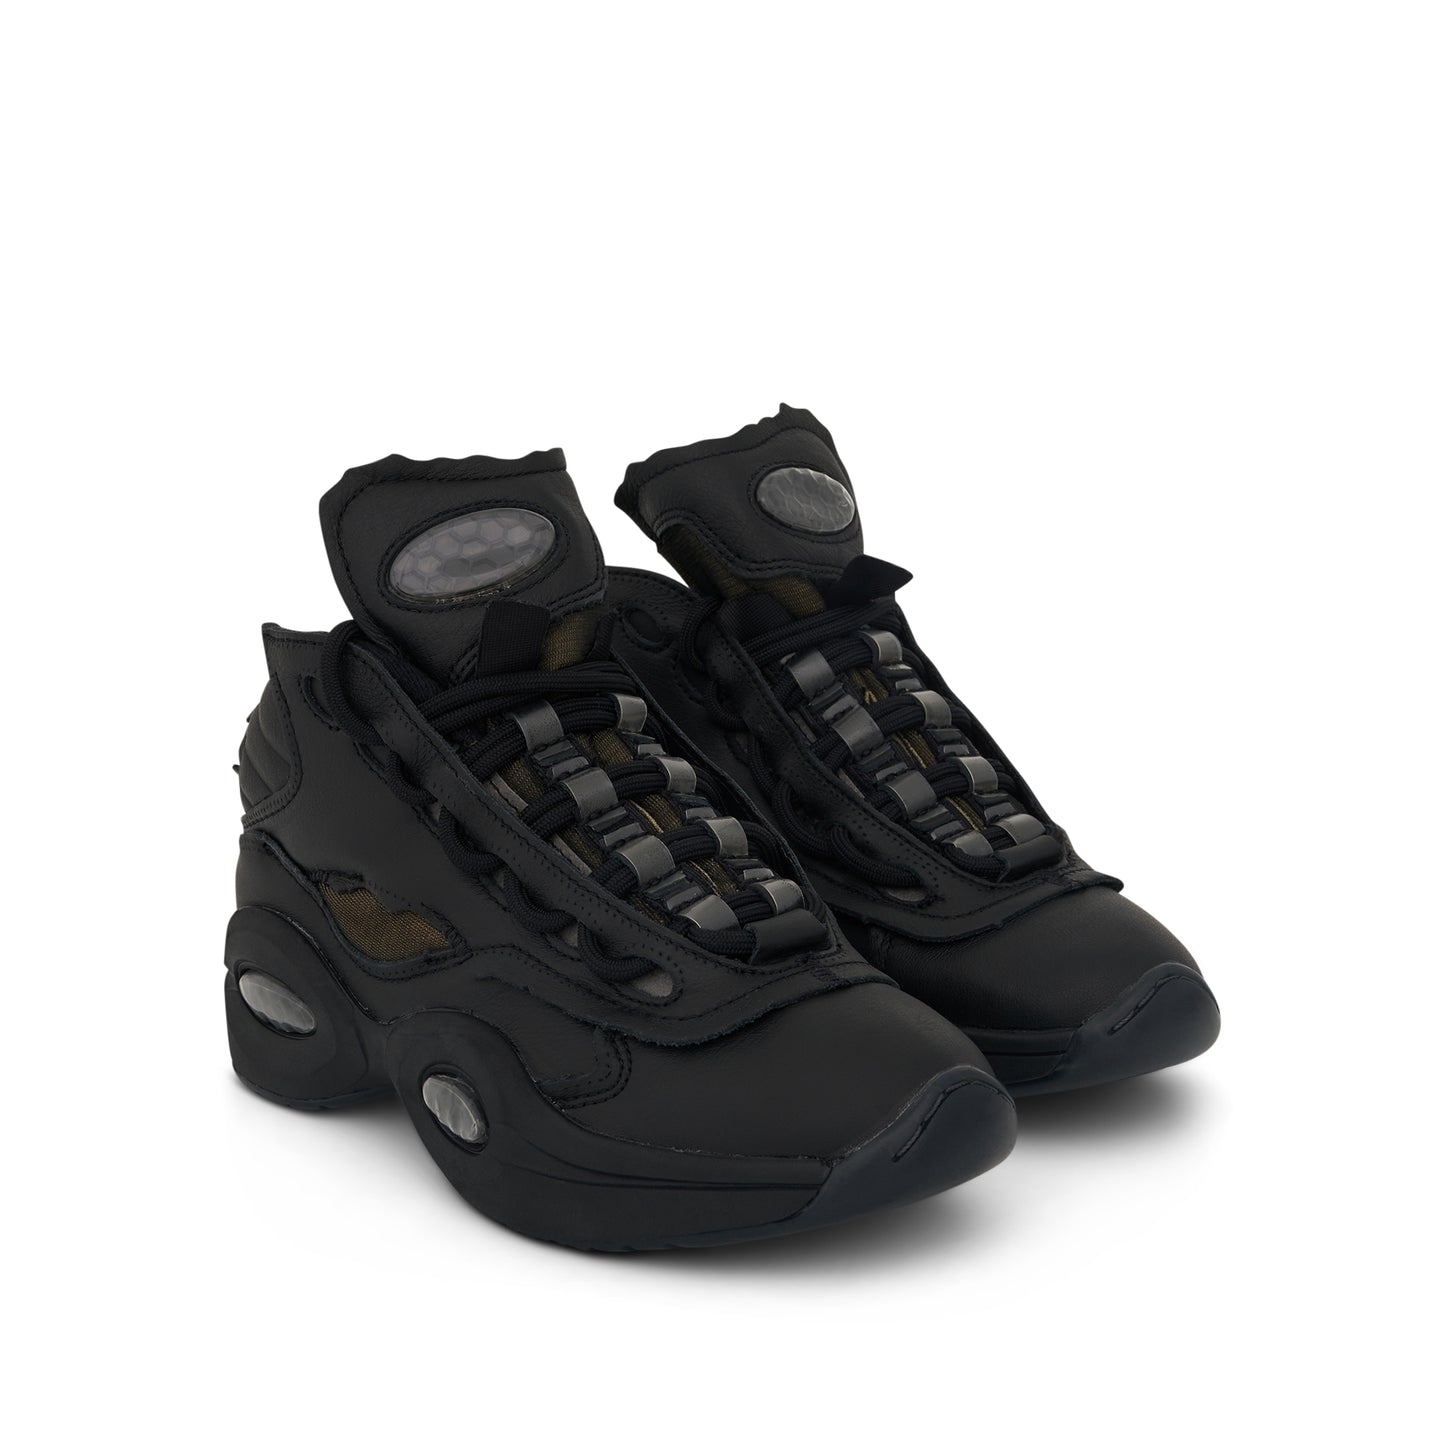 Reebok x Maison Margiela Project 0 TQ Memory OF Sneaker in Black